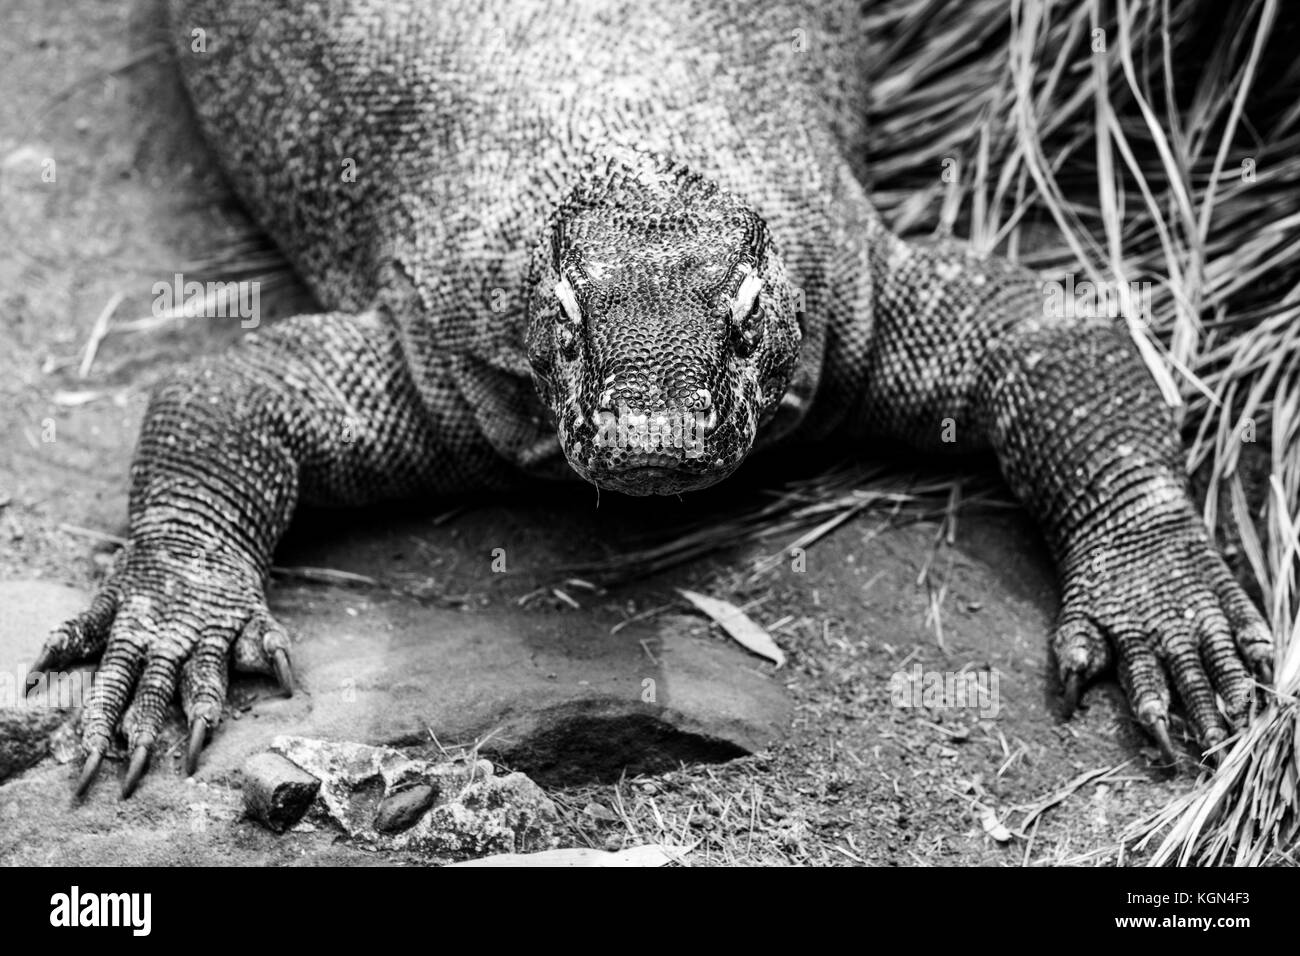 Extreme Nahaufnahme von Komodo Dragon Lizard in Schwarz und Weiß Stockfoto